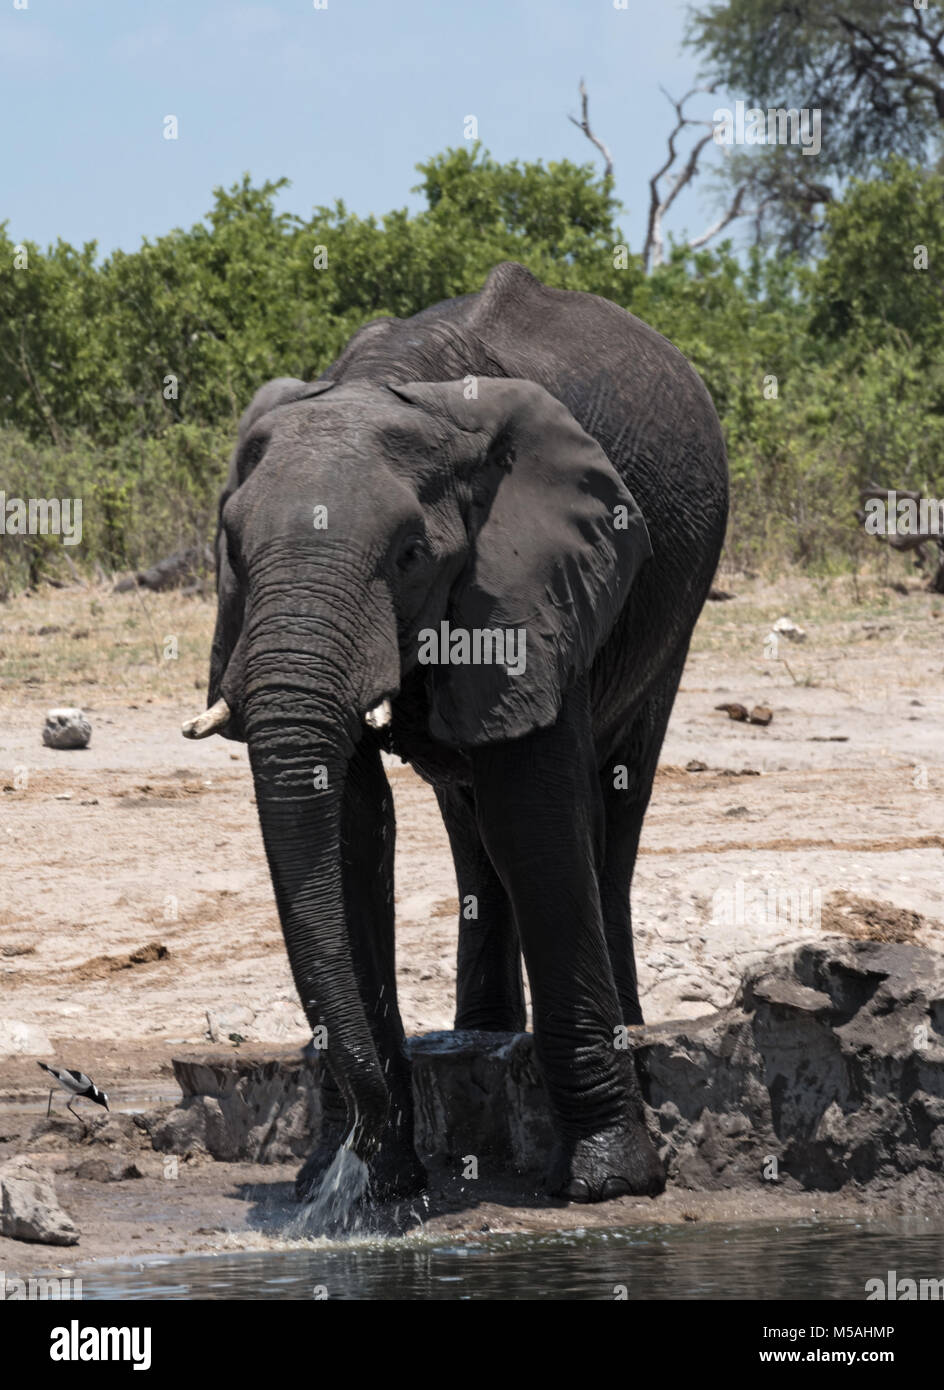 Elephant at a waterhole in Chobe National Park, Botswana Stock Photo